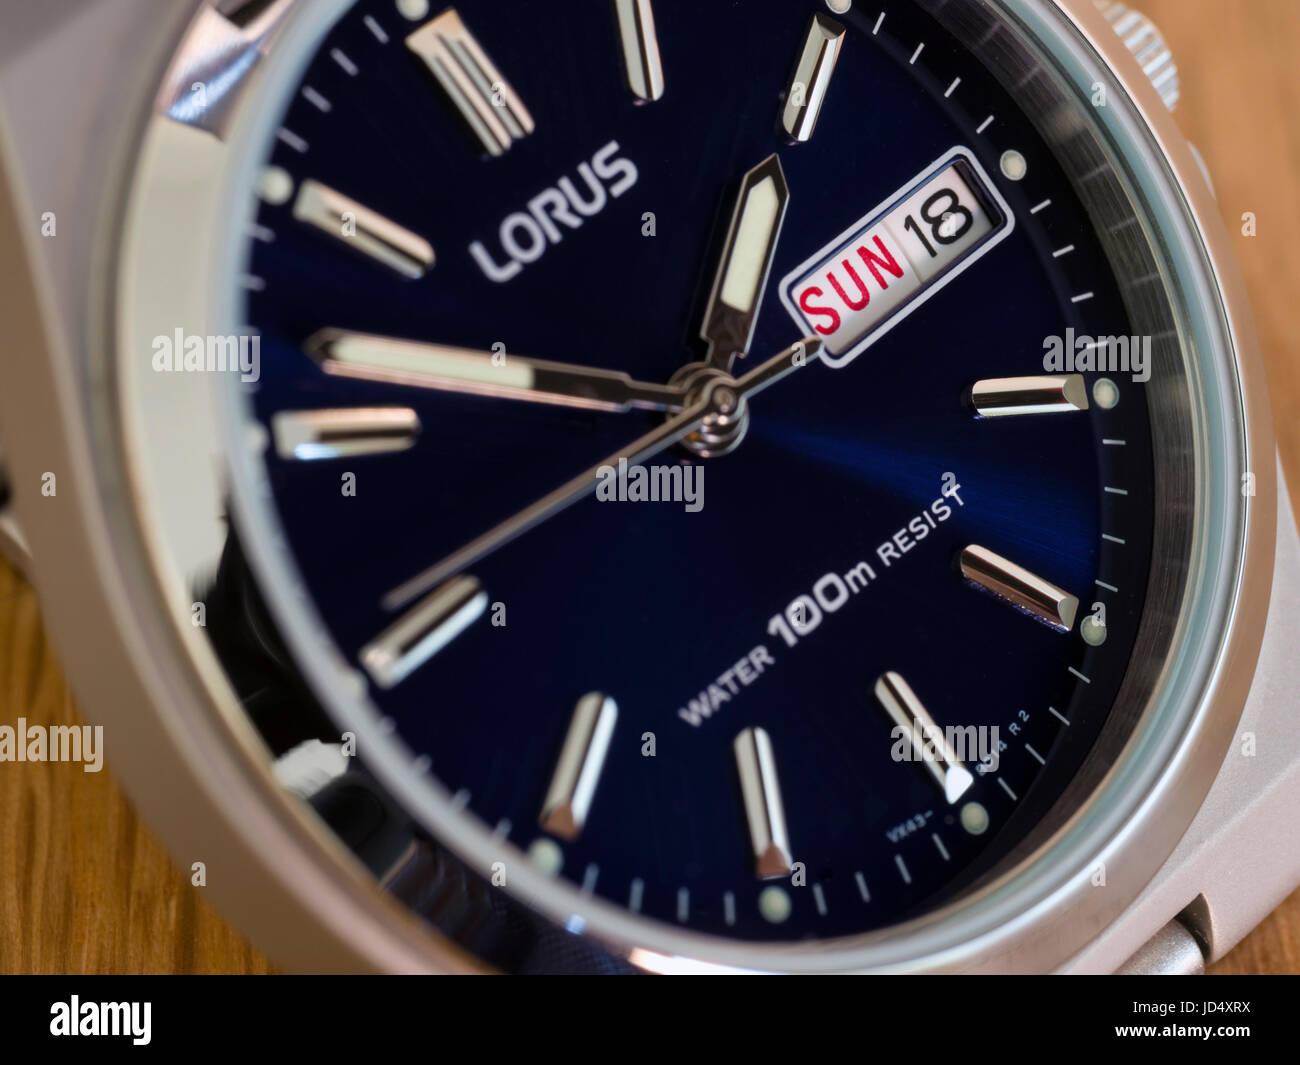 Herren Lorus analoge Armbanduhr, Uhr mit tiefblauen Gesicht, Tag und Datum Anzeige und Edelstahl Gehäuse. Stockfoto